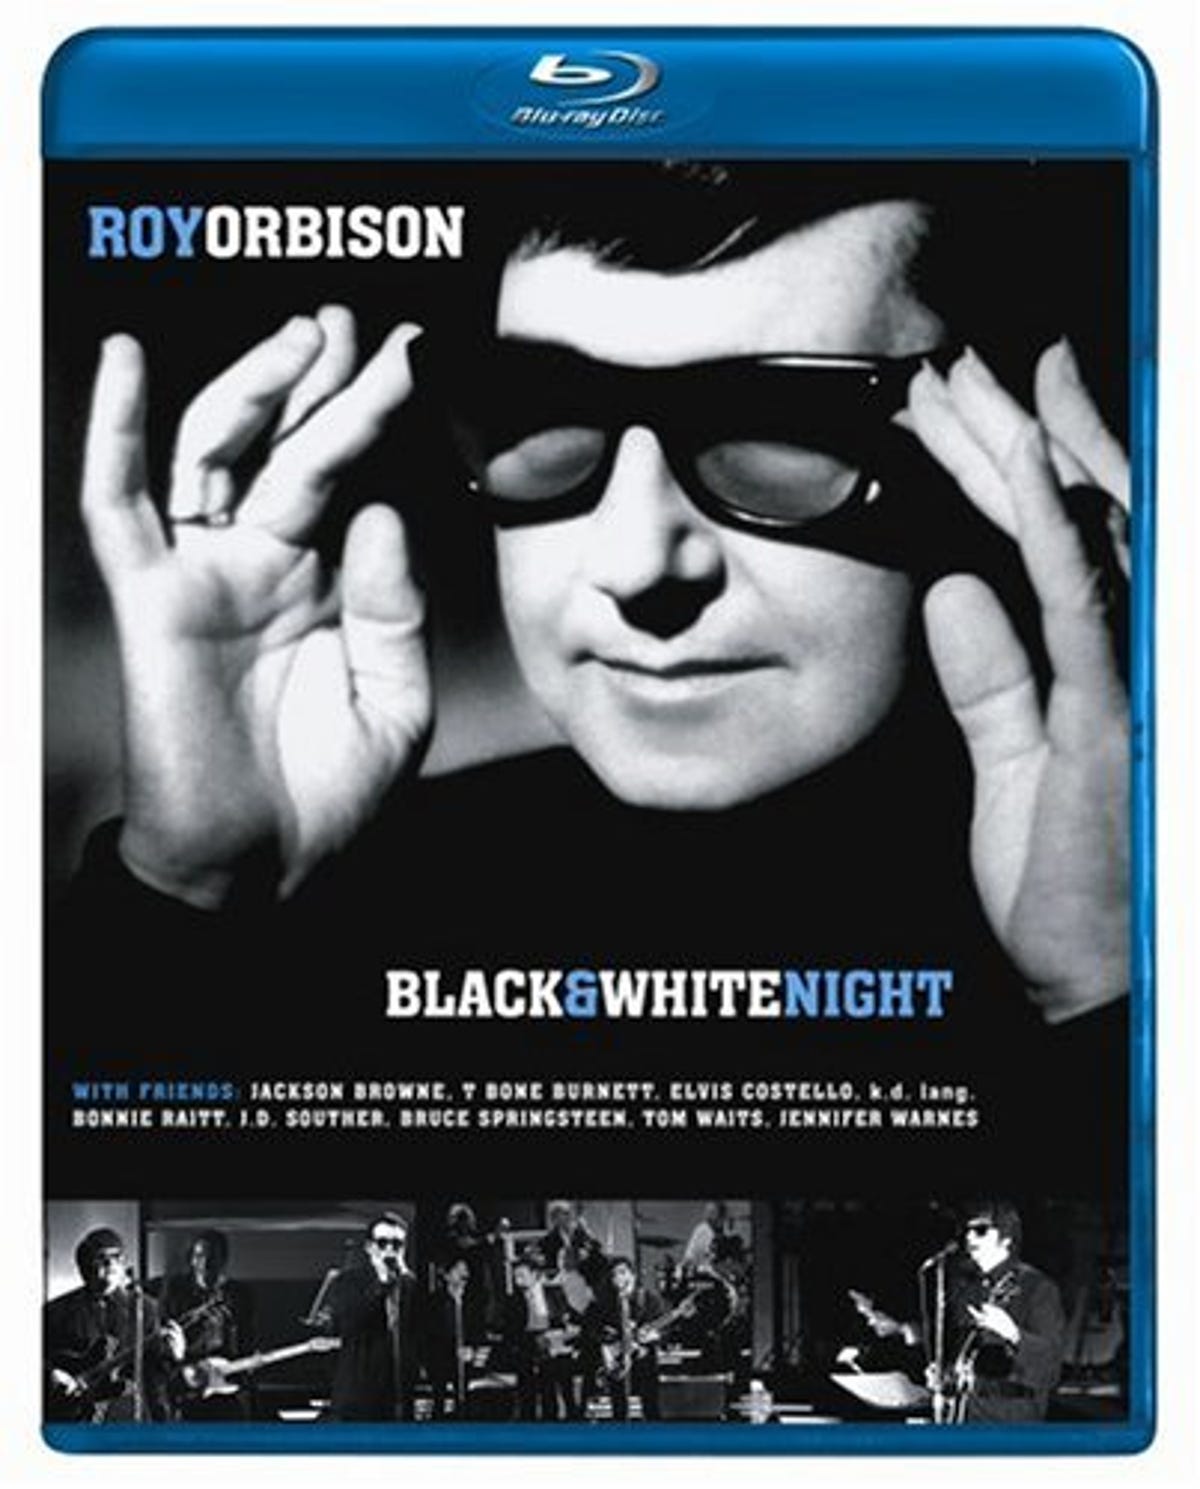 Roy_Orbison_BlackWhite_night.jpg